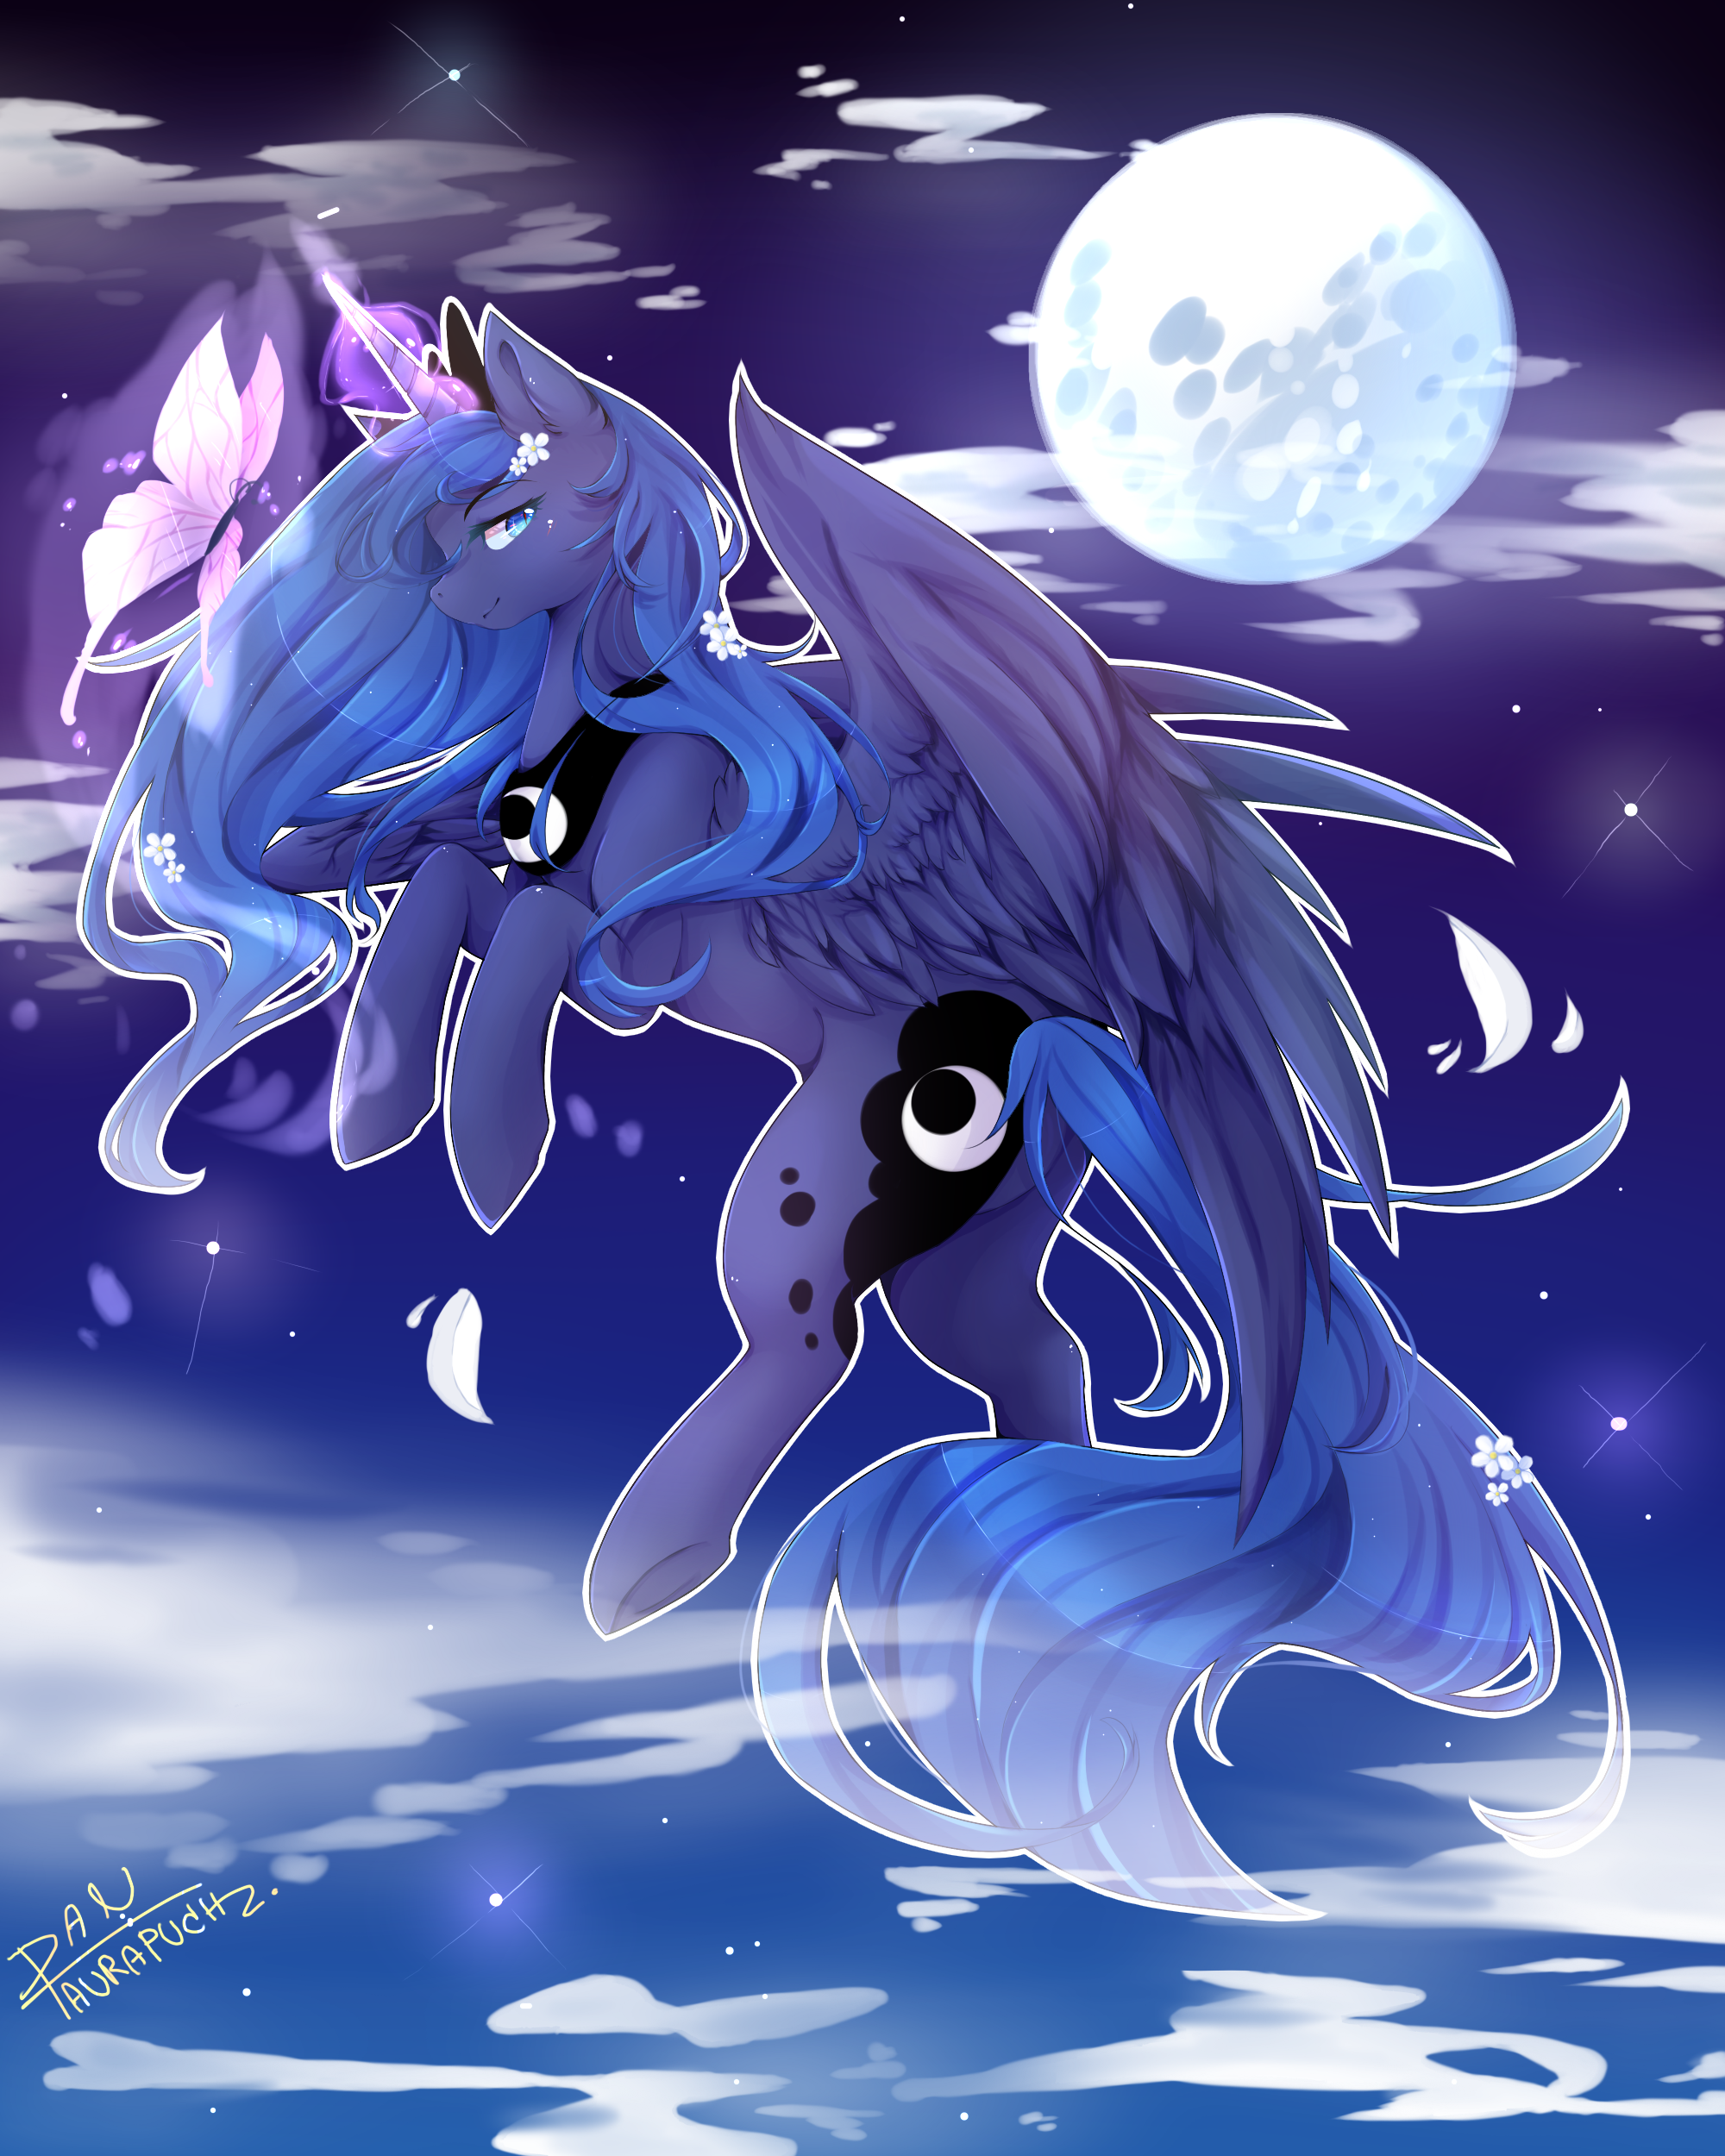 Луна МЛП. Принцесса Луна МЛП. МЛП принцесса Луна арт. Луна МЛП арт. My little pony принцесса луна